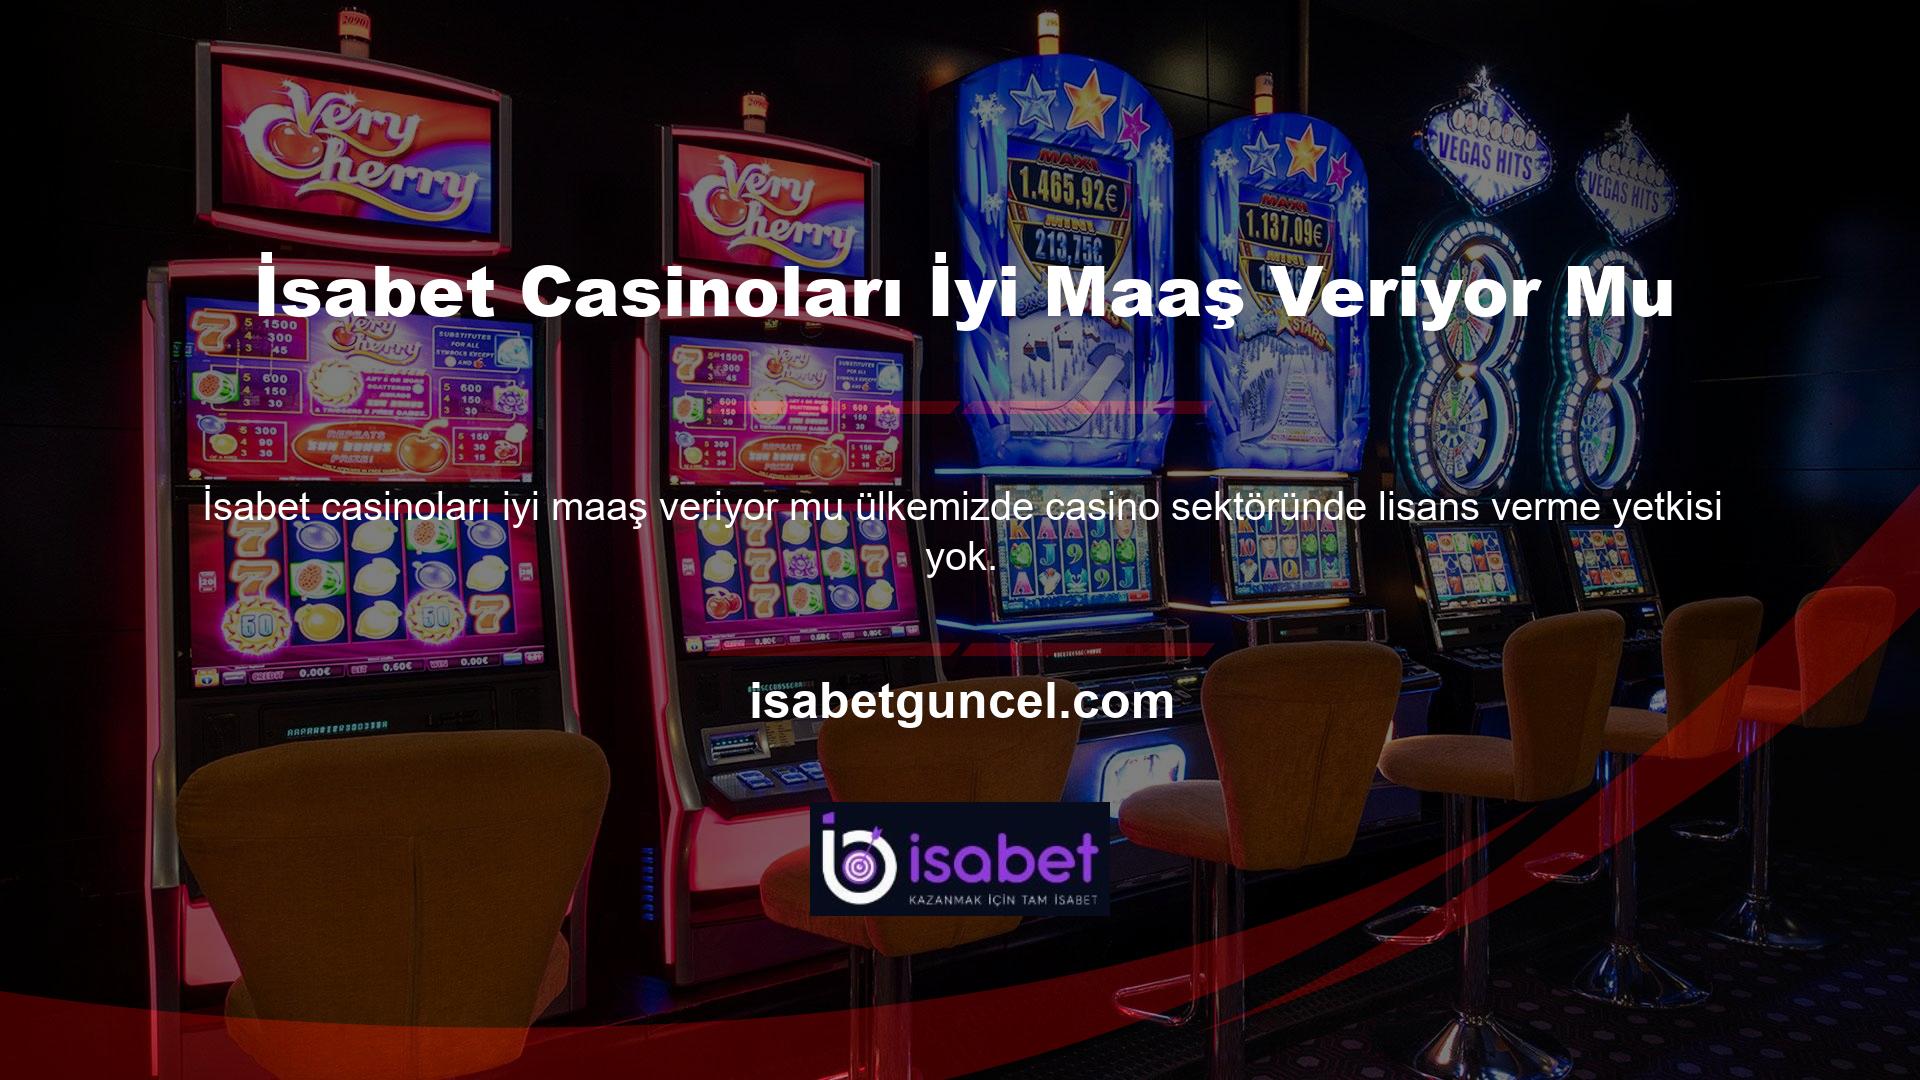 Casino veya casino sektöründe faaliyet göstermek isteyen web siteleri yurt dışından lisans almaktadır